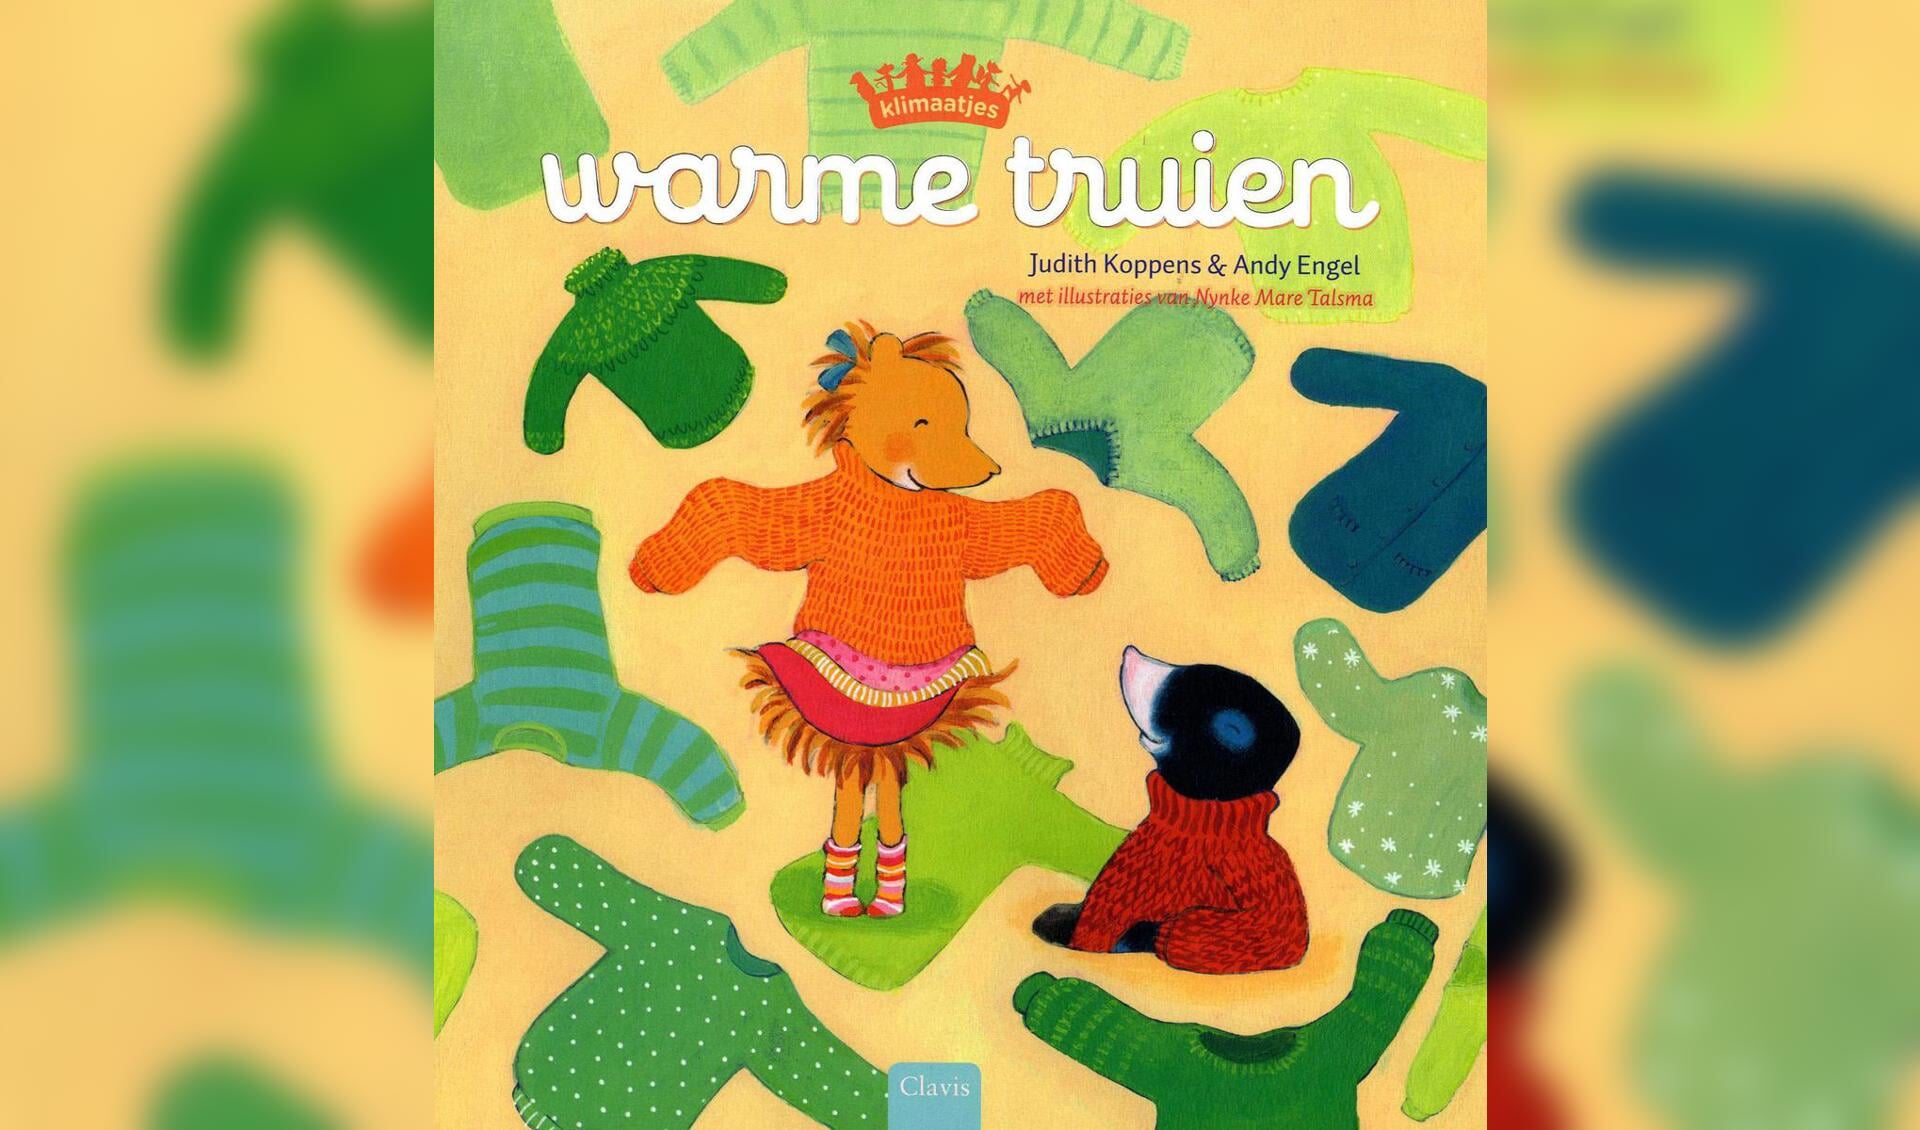 Prentenboek 'Warme truien' wordt voorgelezen in School 7.